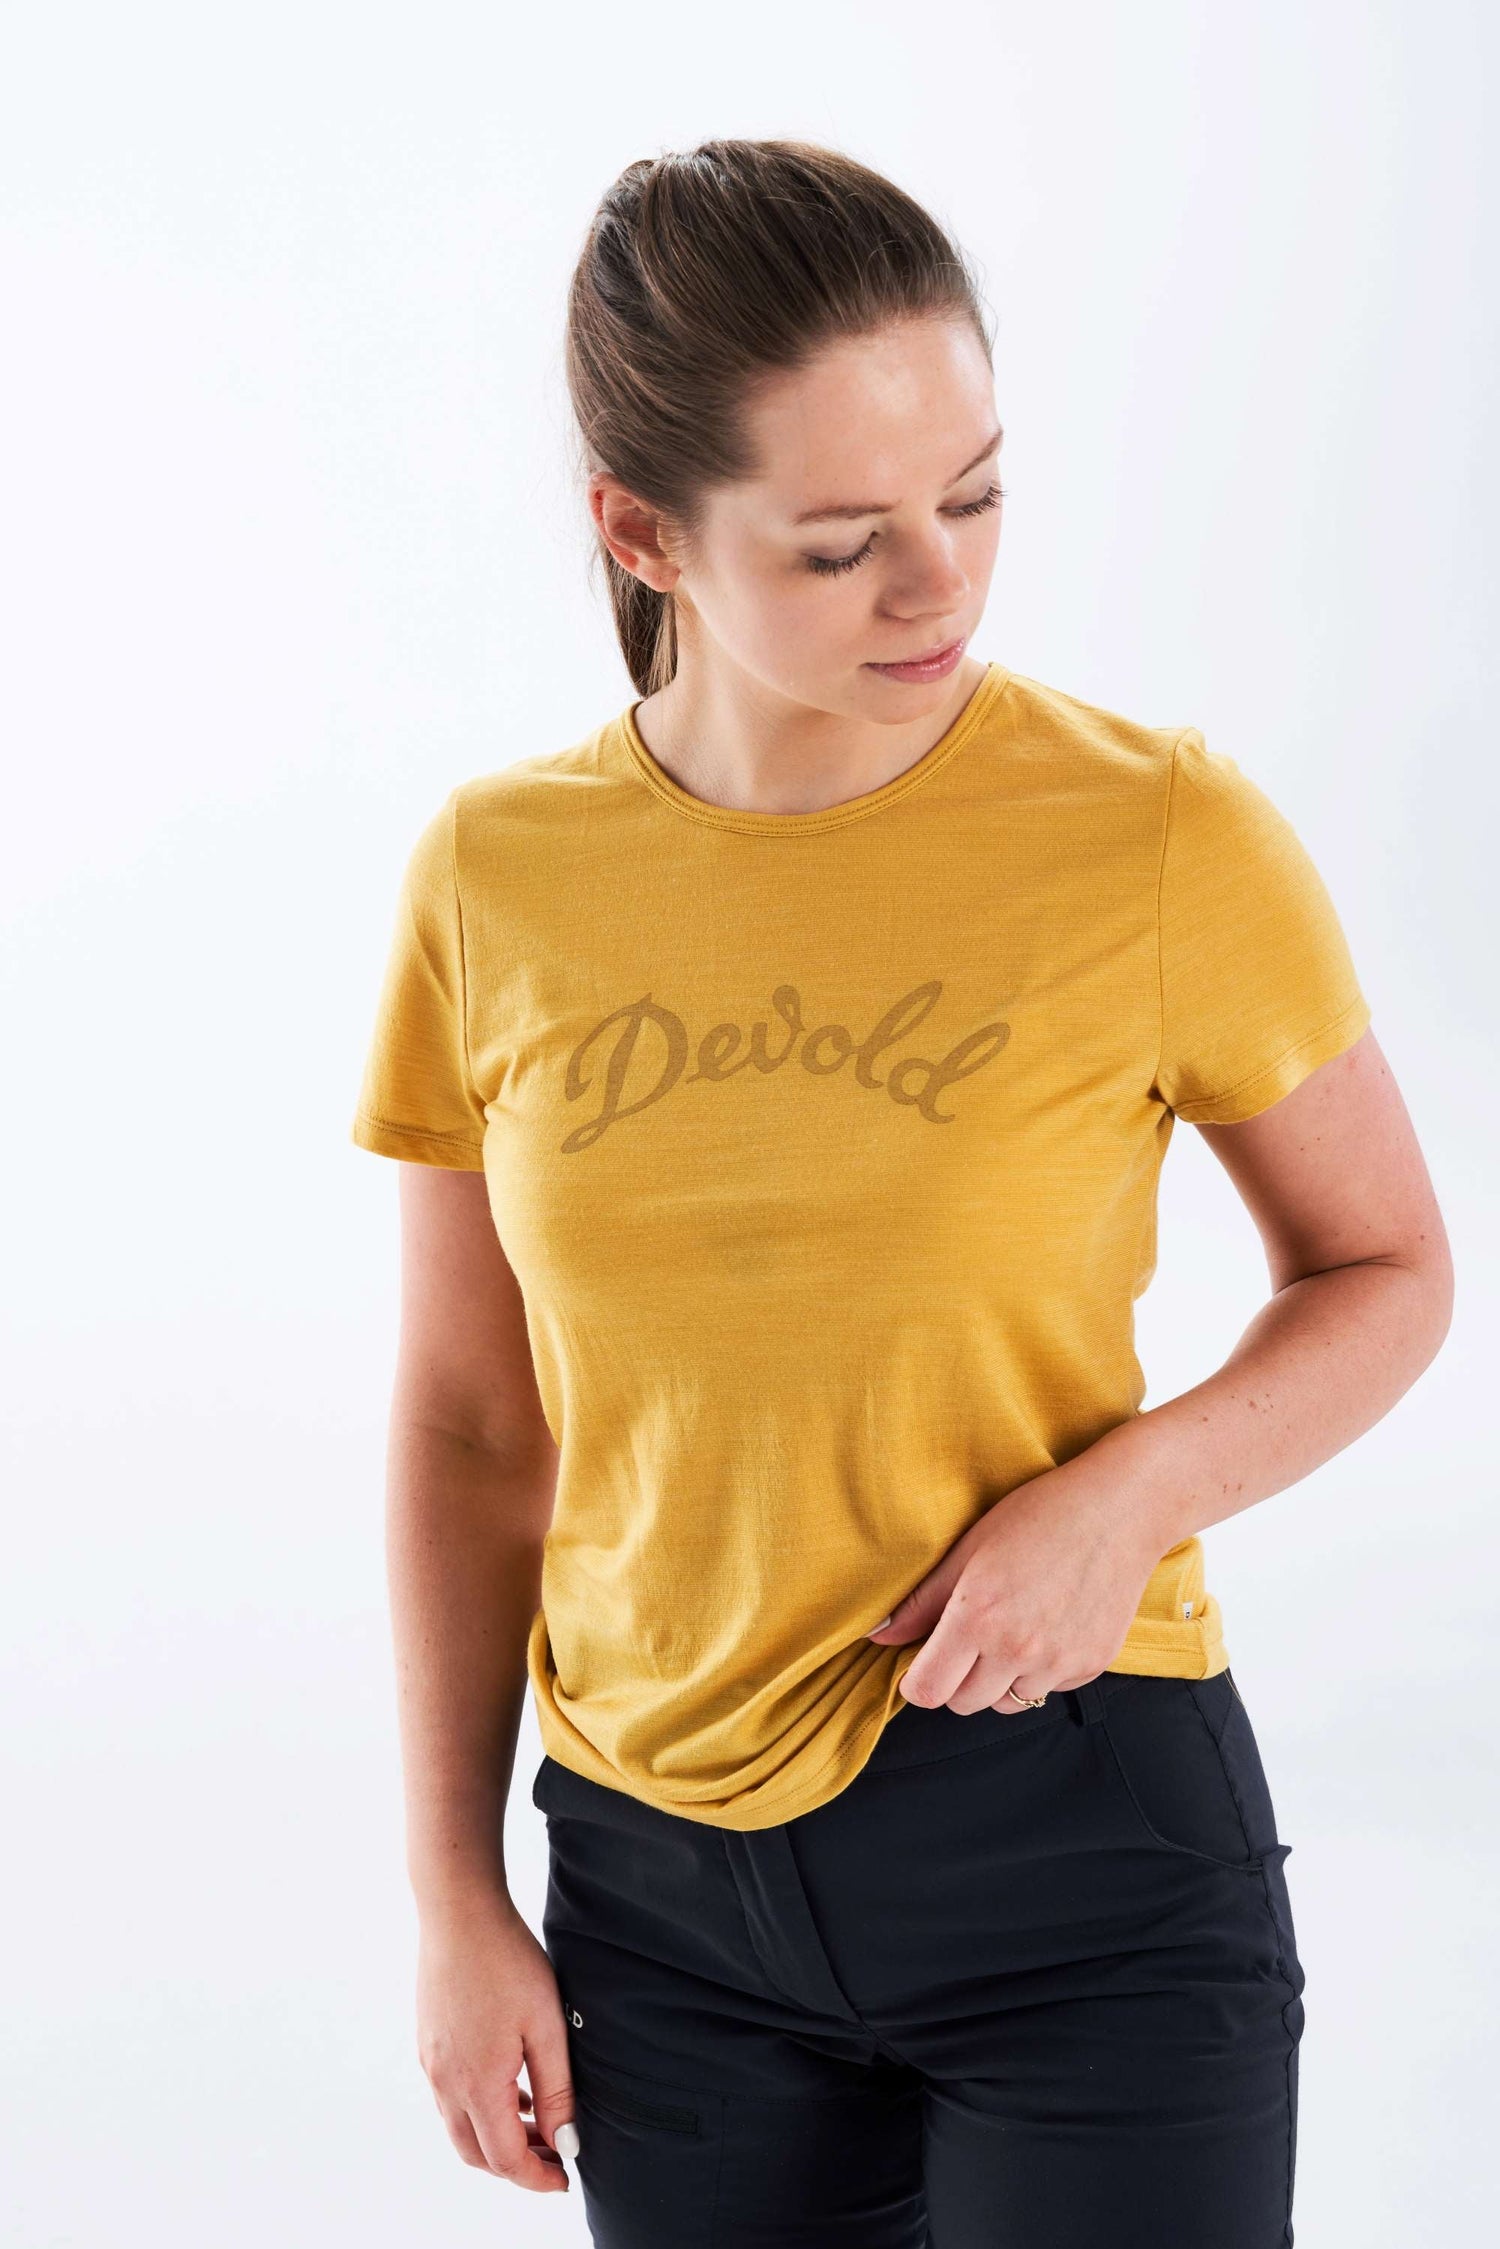 Devold - W's Myrull Tee - Merino & Tencel - Weekendbee - sustainable sportswear